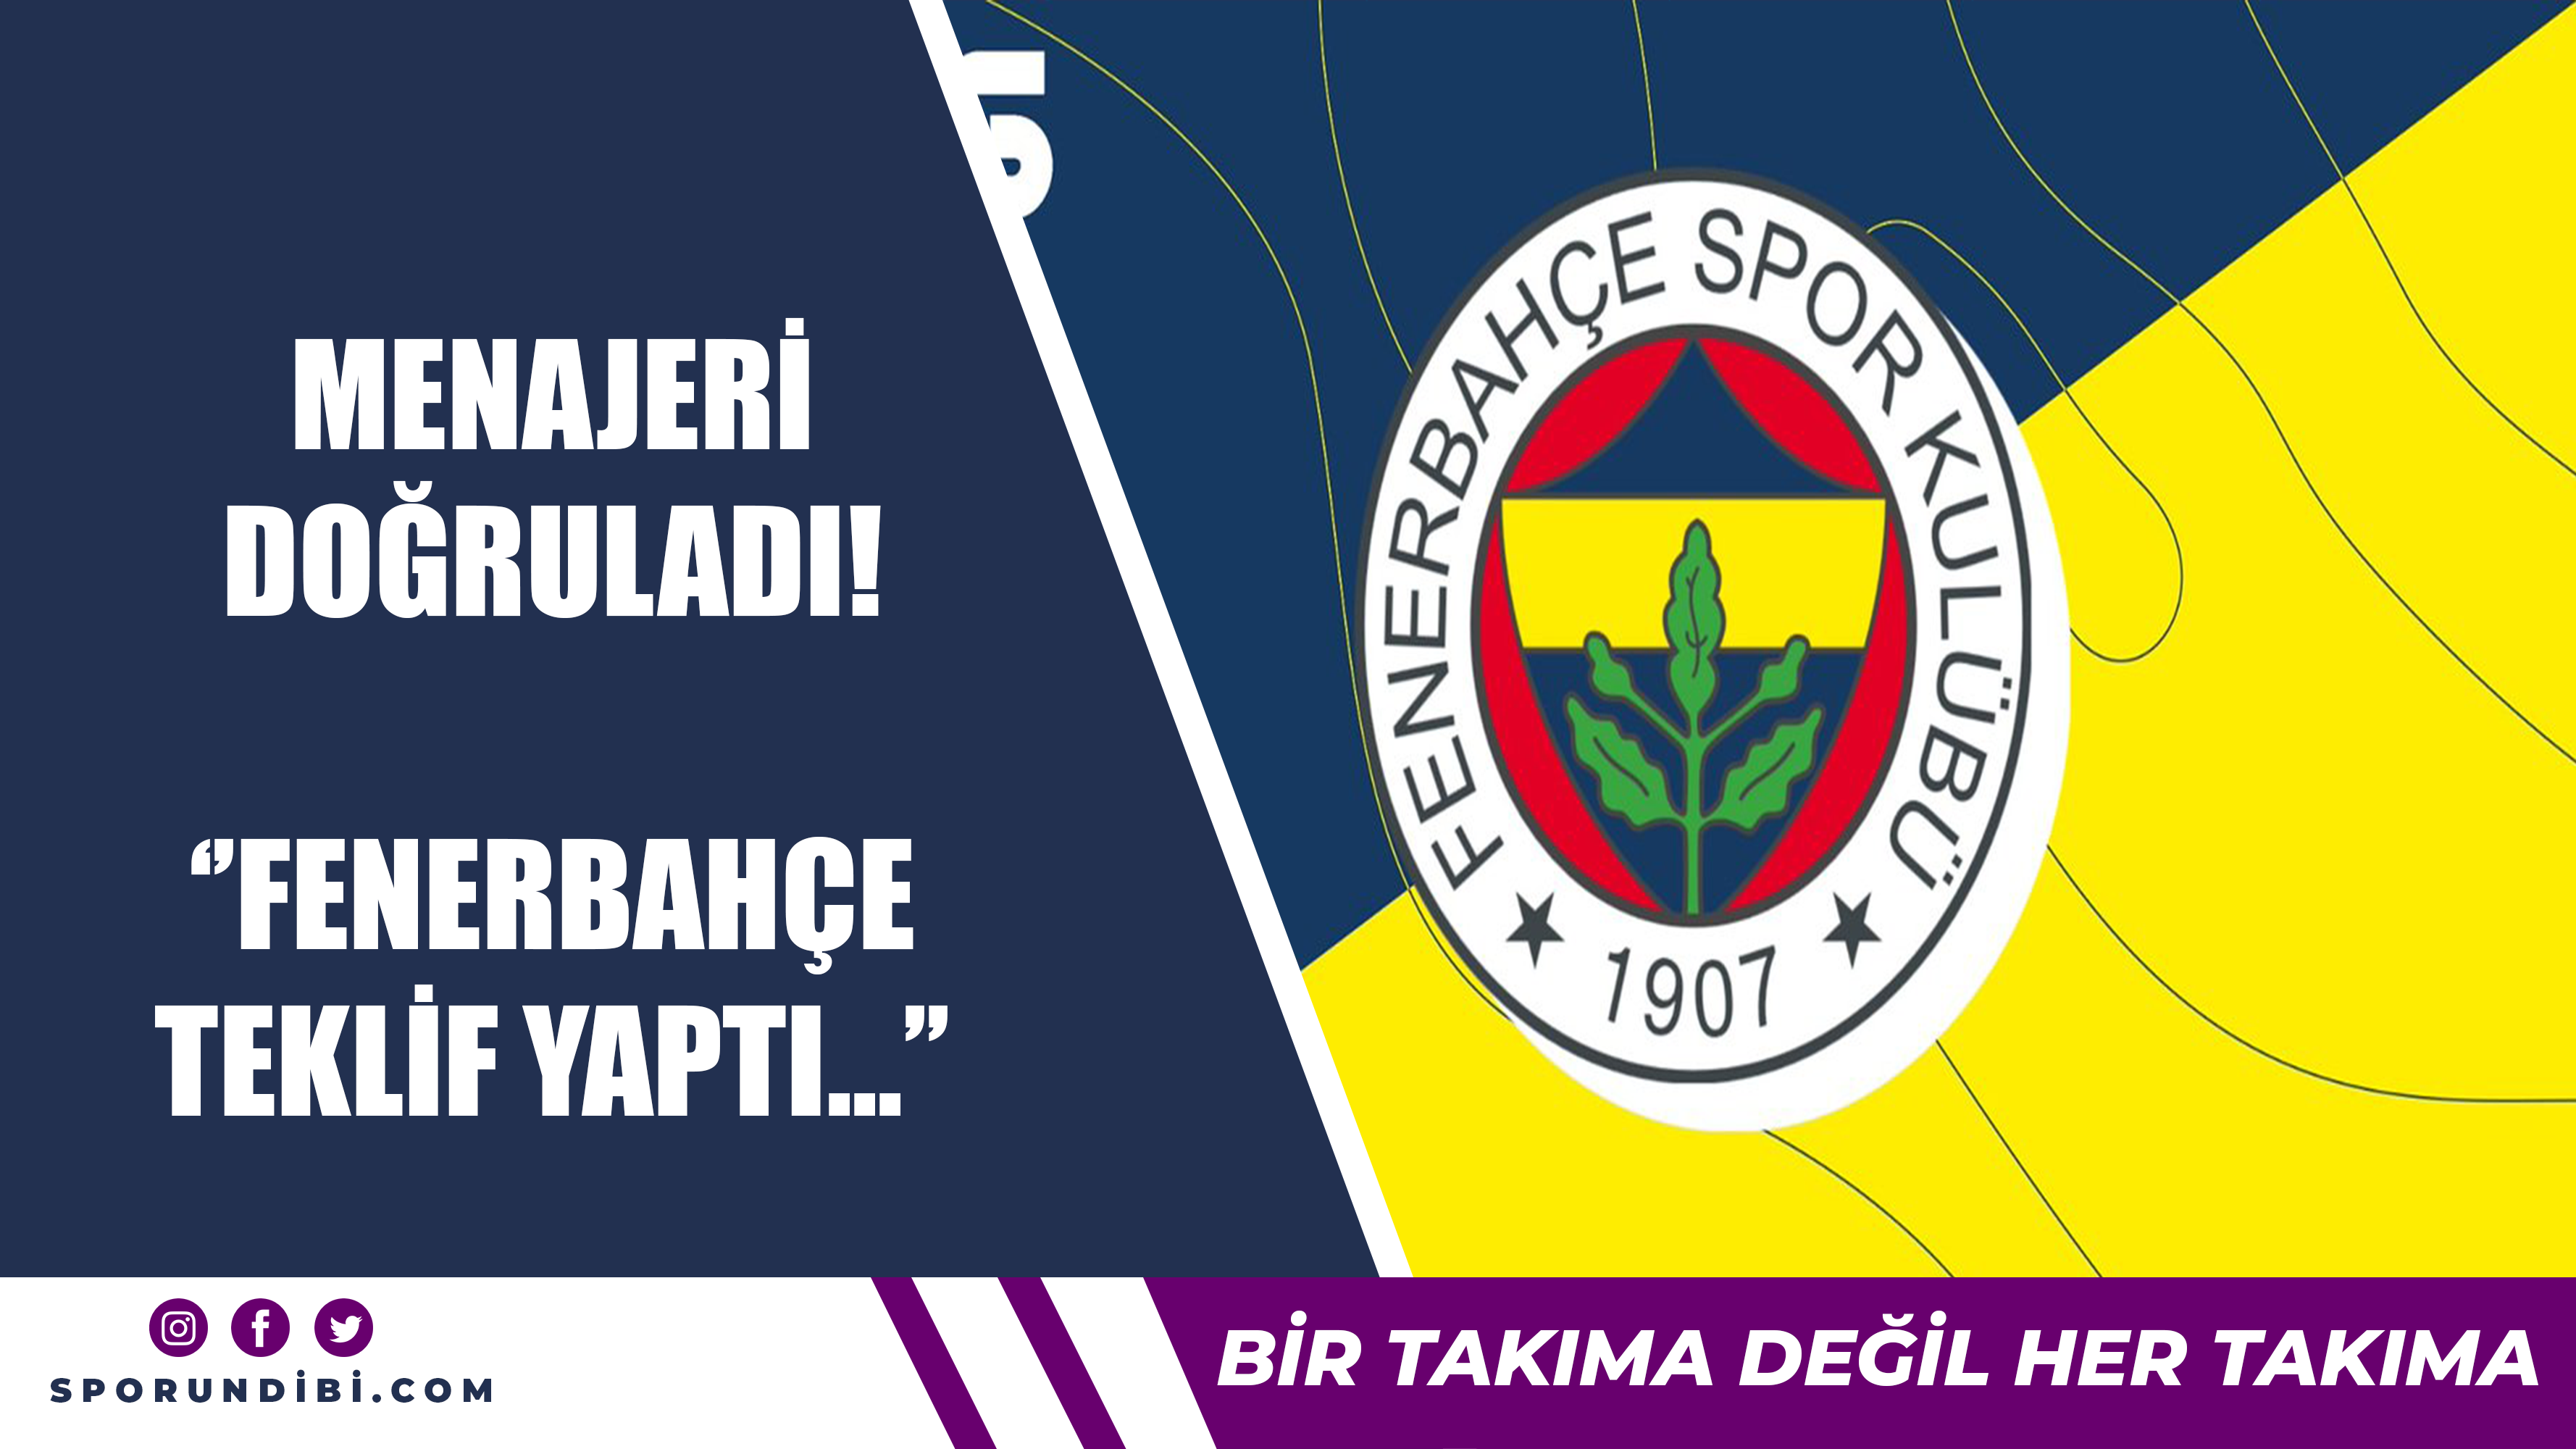 Menajeri doğruladı! ''Fenerbahçe teklif yaptı''